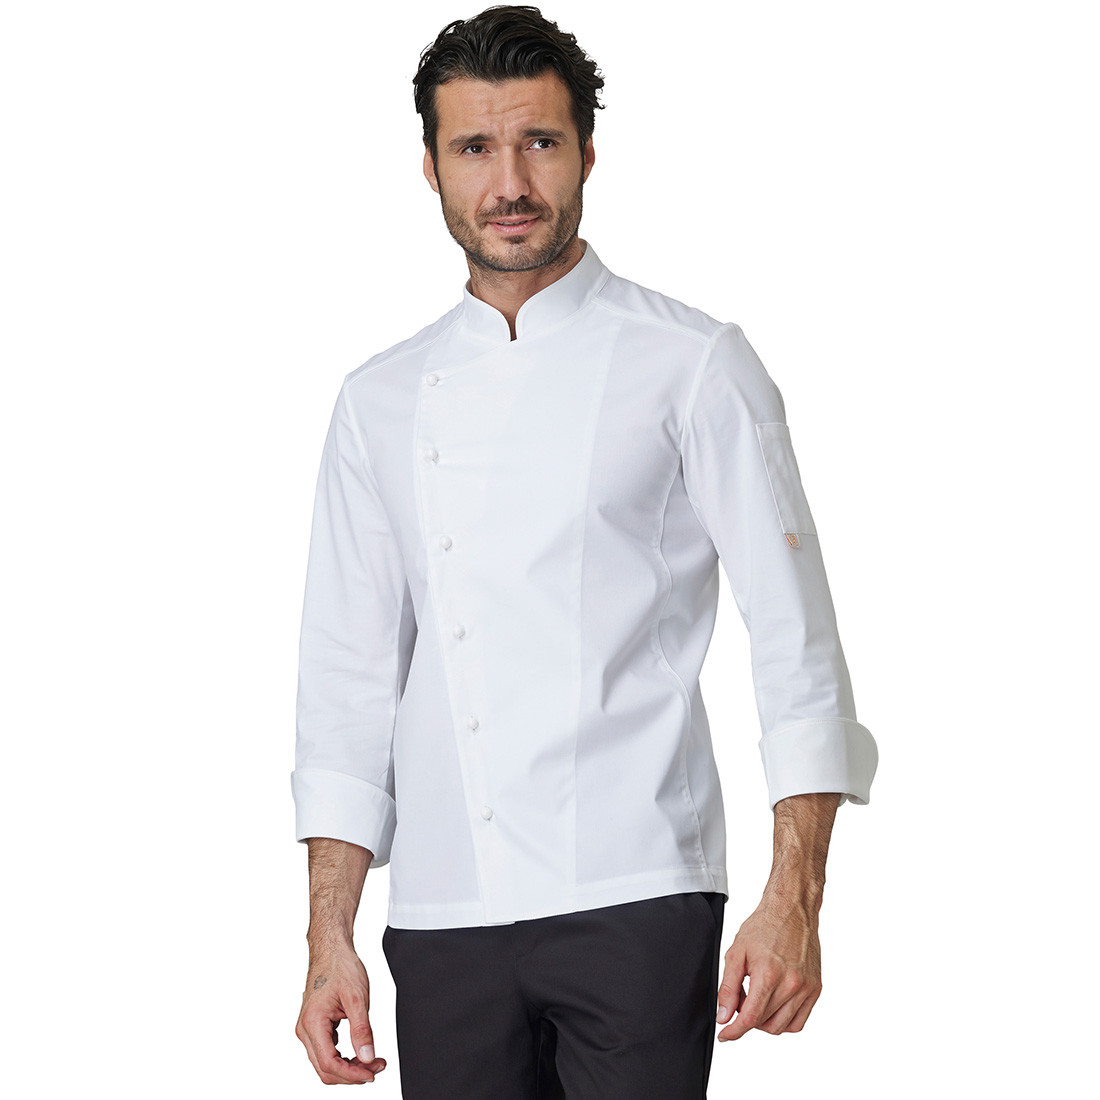 Giacca chef GABRIEL - Abbigliamento di protezione